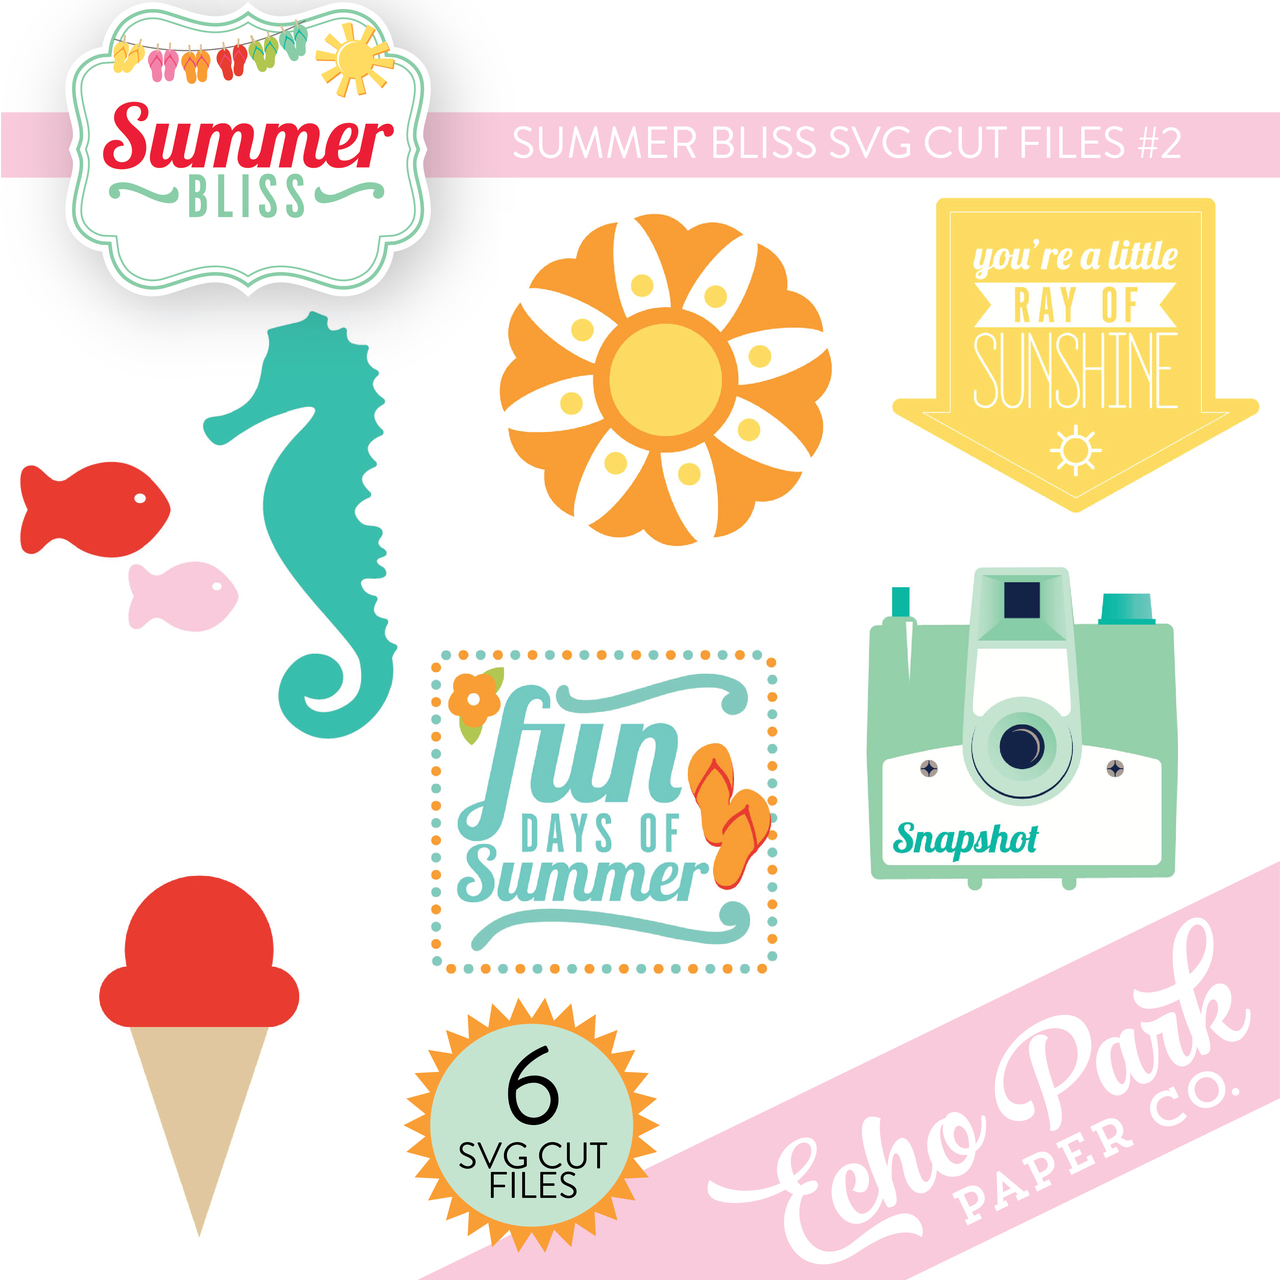 Summer Bliss SVG Cut Files #2